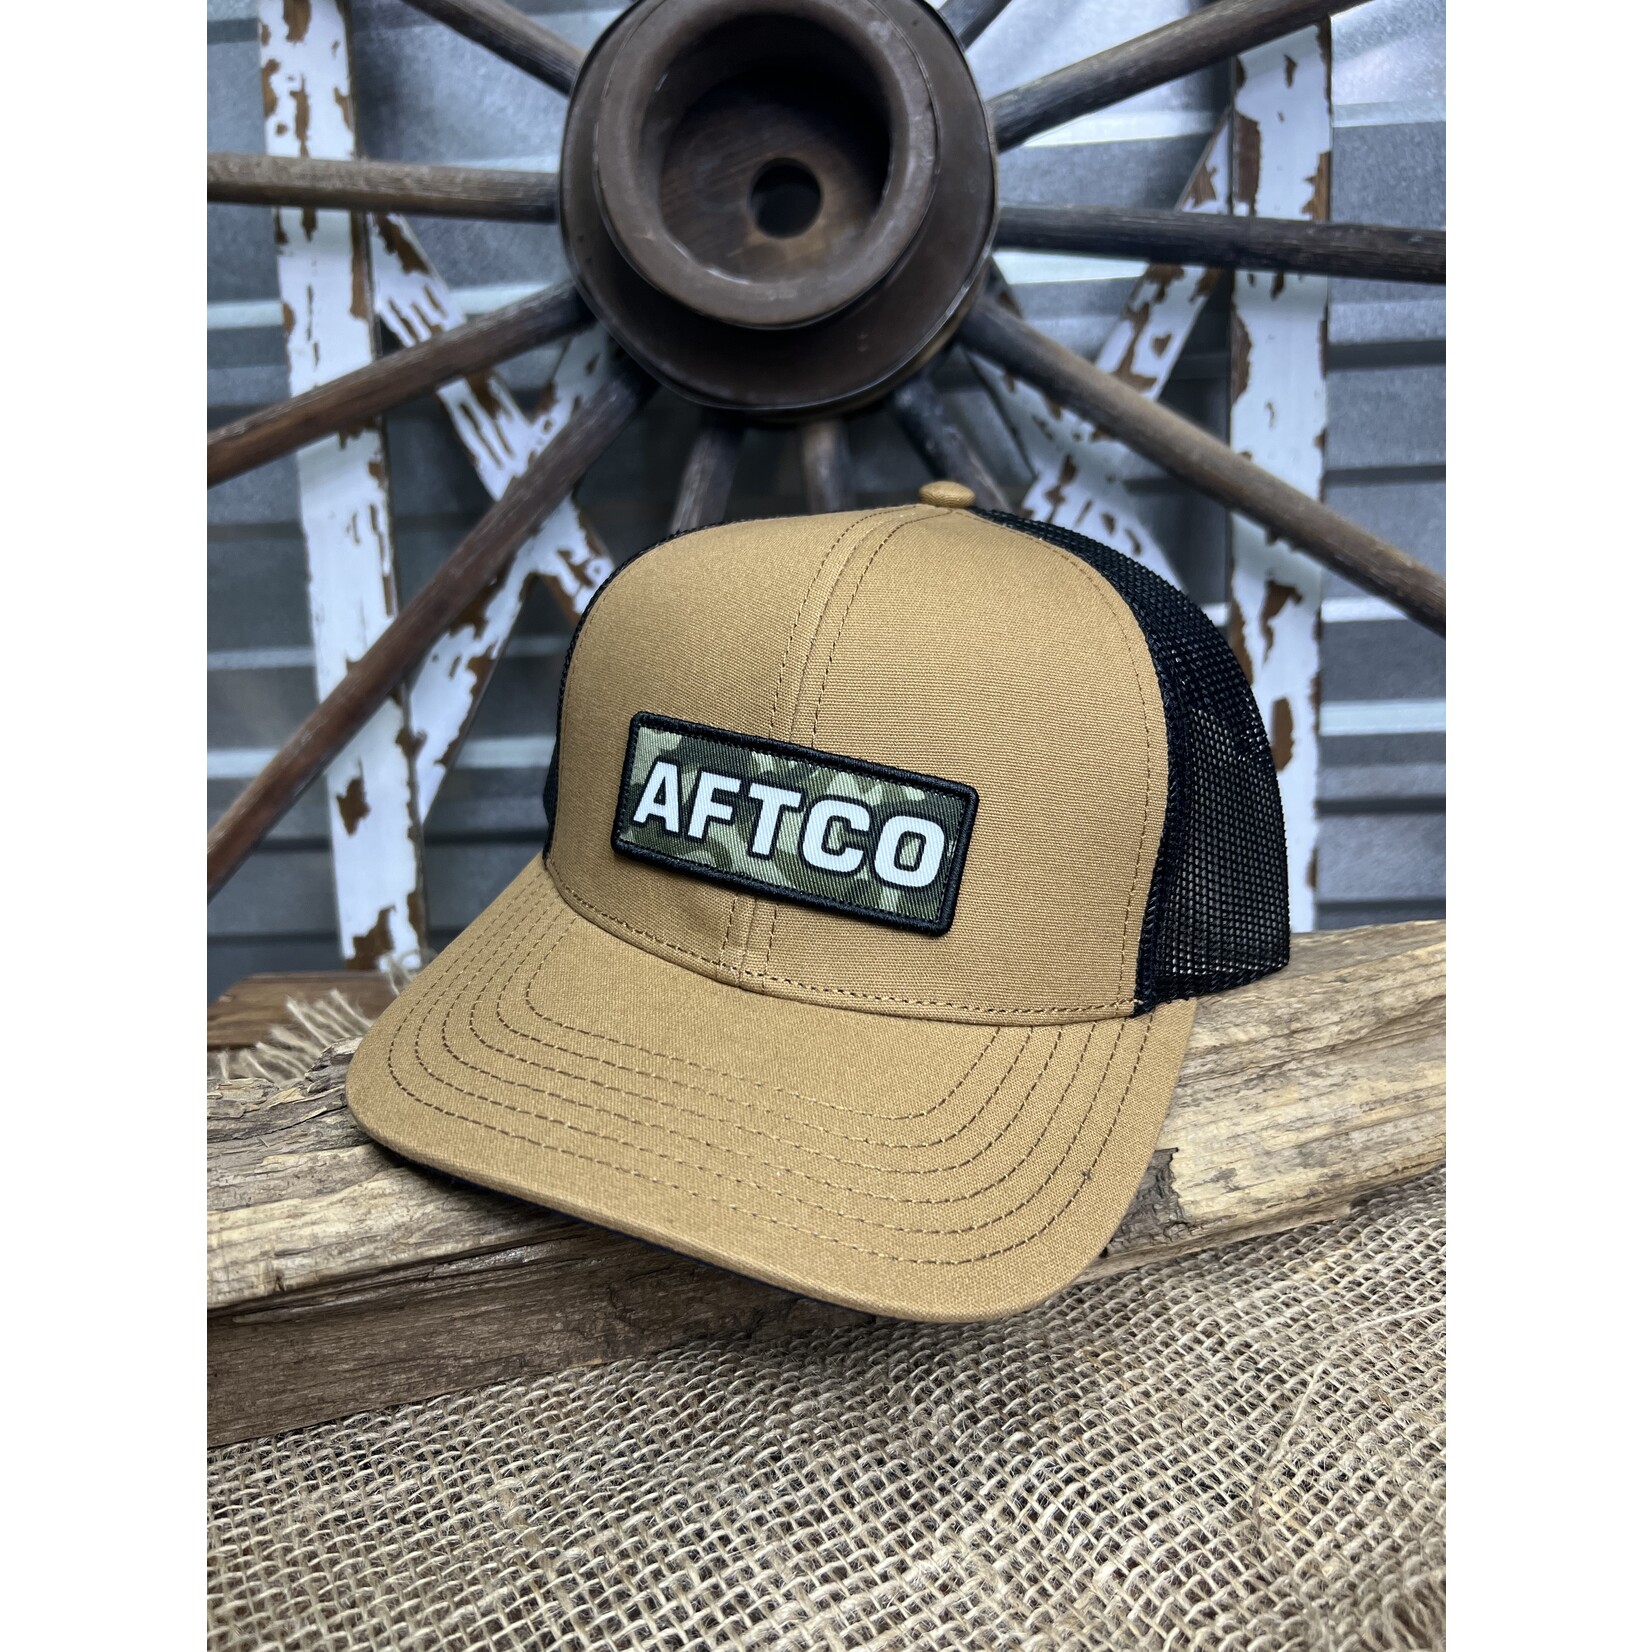 Aftco Aftco Men's Boss Trucker Snapback Hat